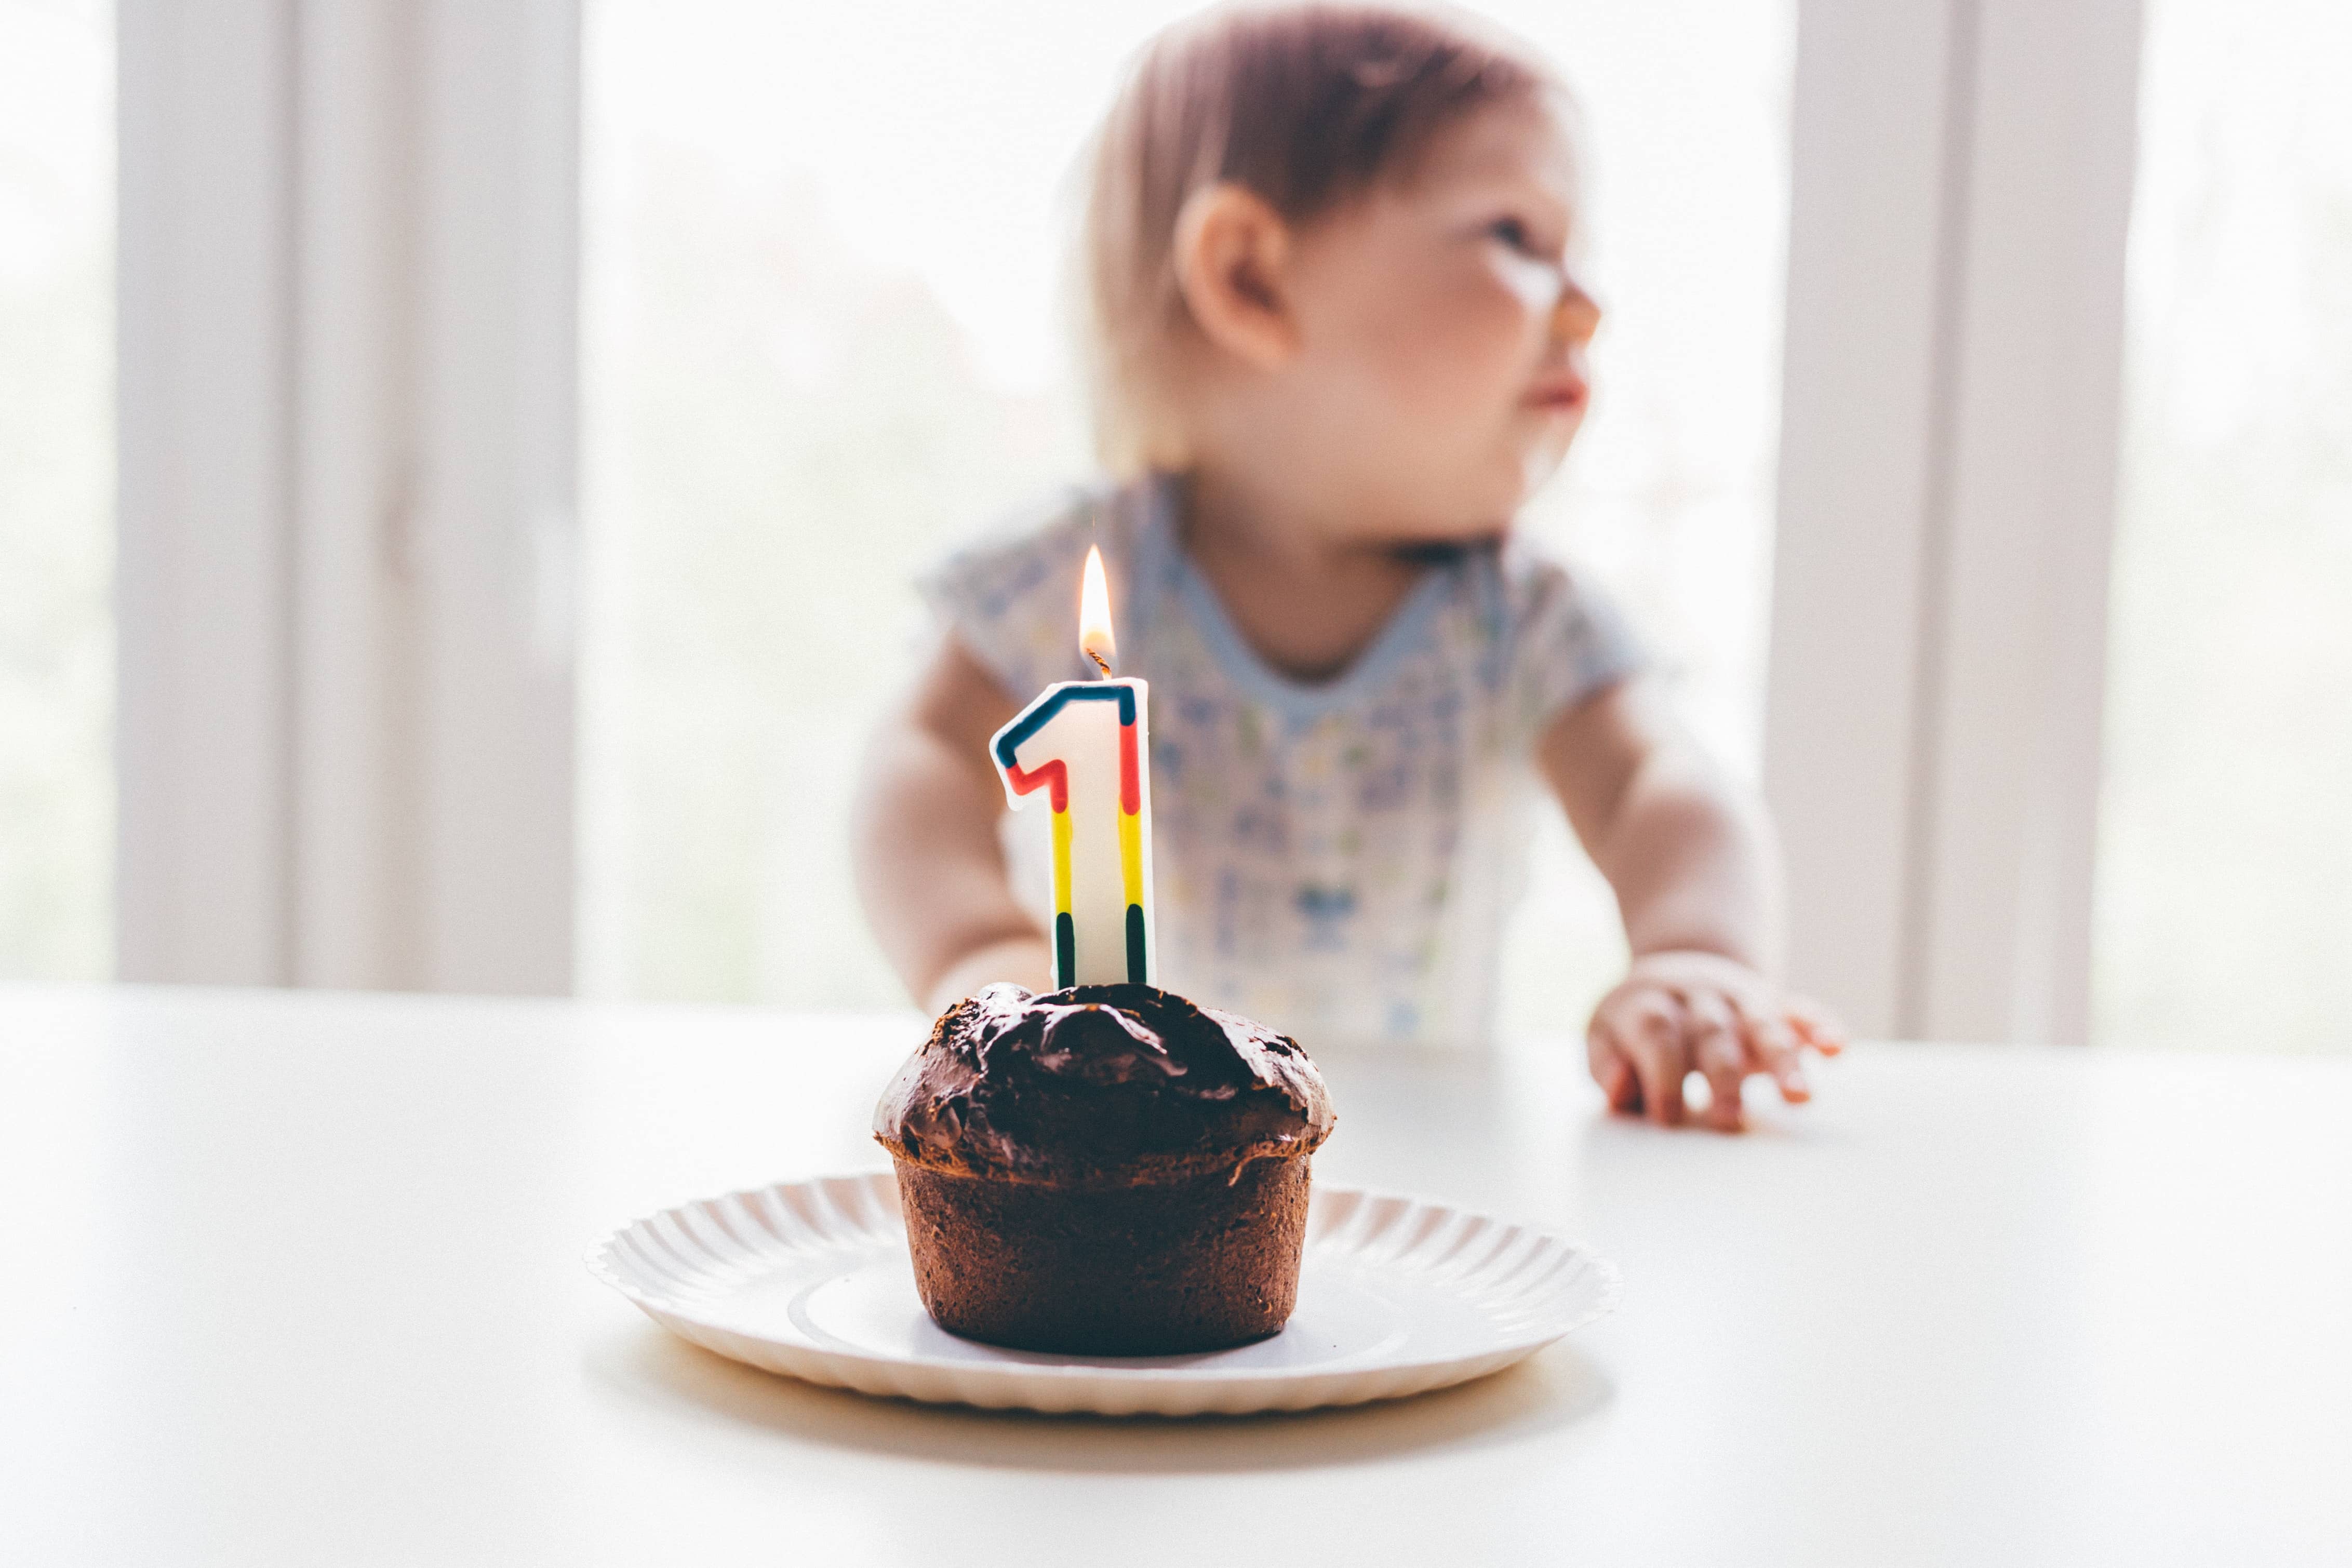 Anniversaire 1 an : 5 idées pour célébrer la première année de